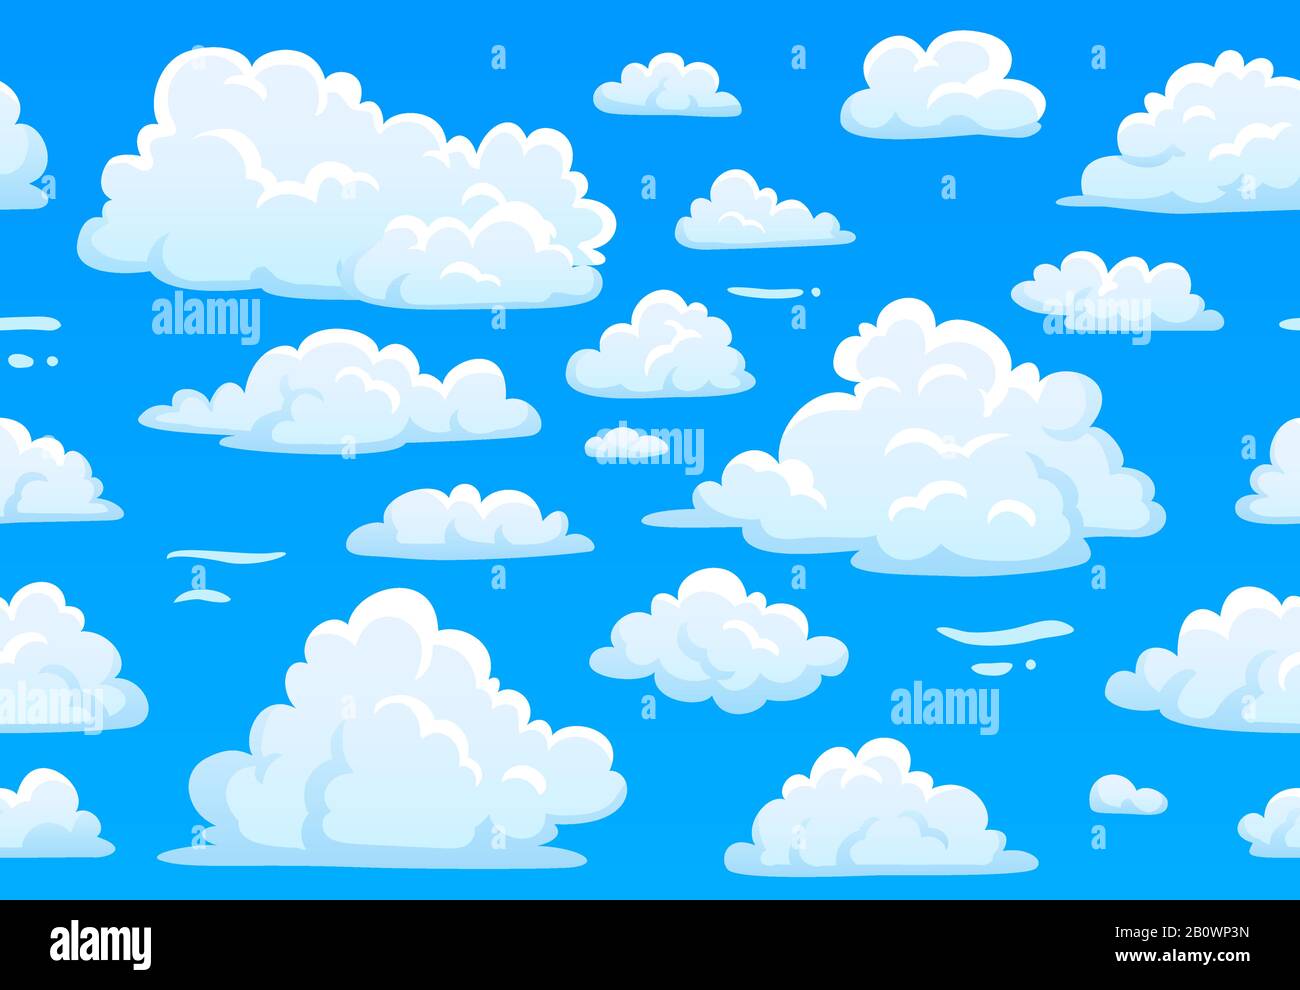 Bleu bande dessinée ciel nuageux. Motif horizontal sans couture avec nuages blancs et moelleux. texture vectorielle ciel surmoulée de jeu en 2 dimensions Illustration de Vecteur